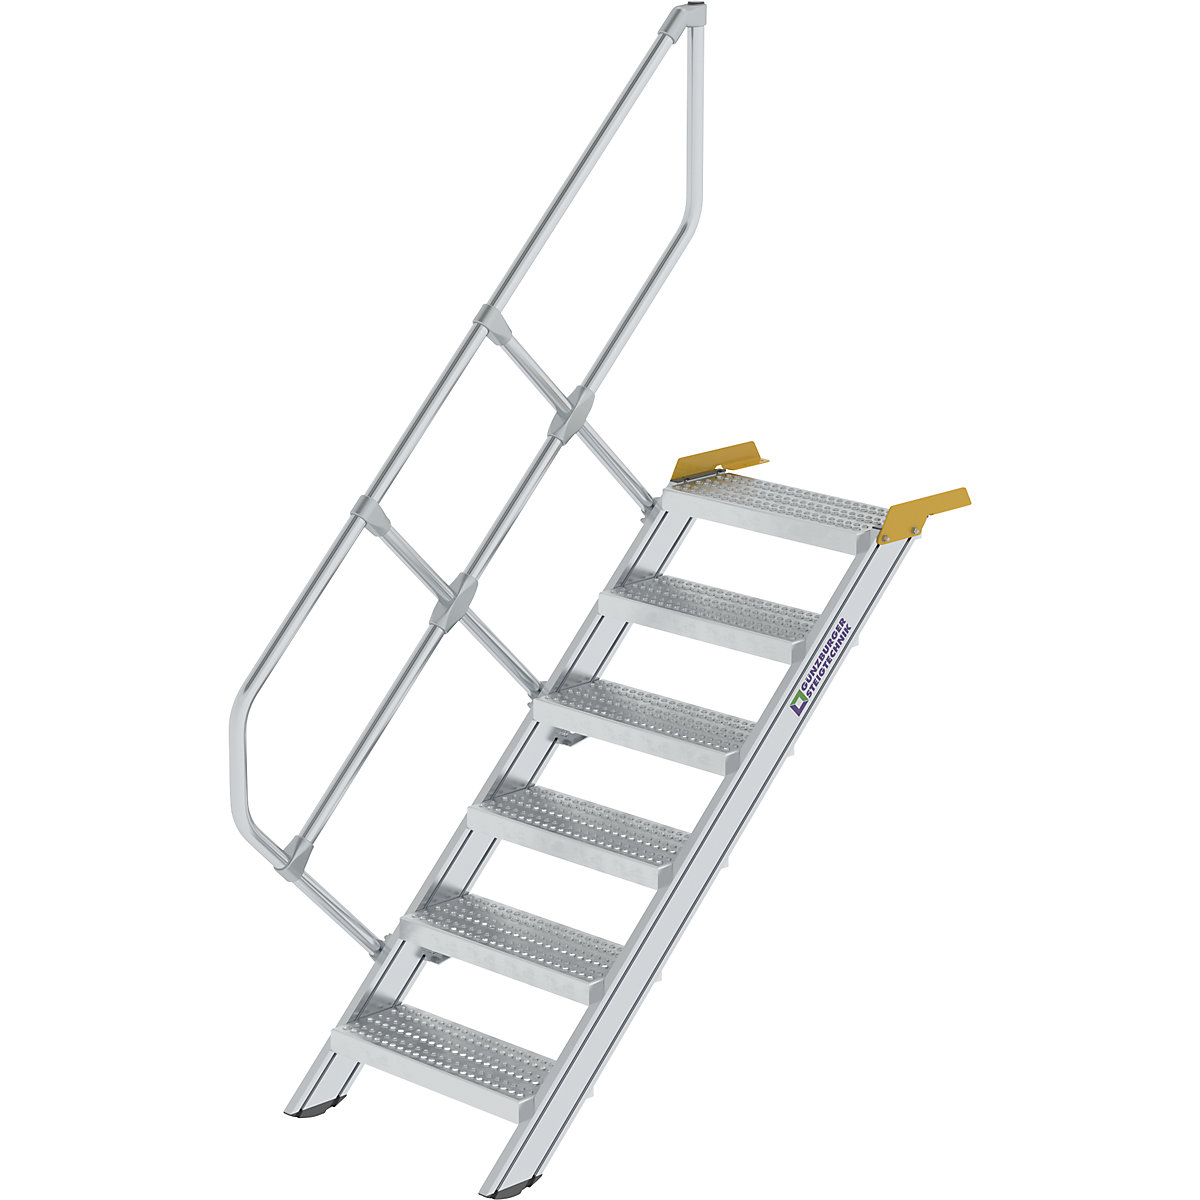 Ipari lépcső – MUNK, perforált lemezes acélfokok, lépcsőfokok szélessége 600 mm, 6 lépcsőfok-8